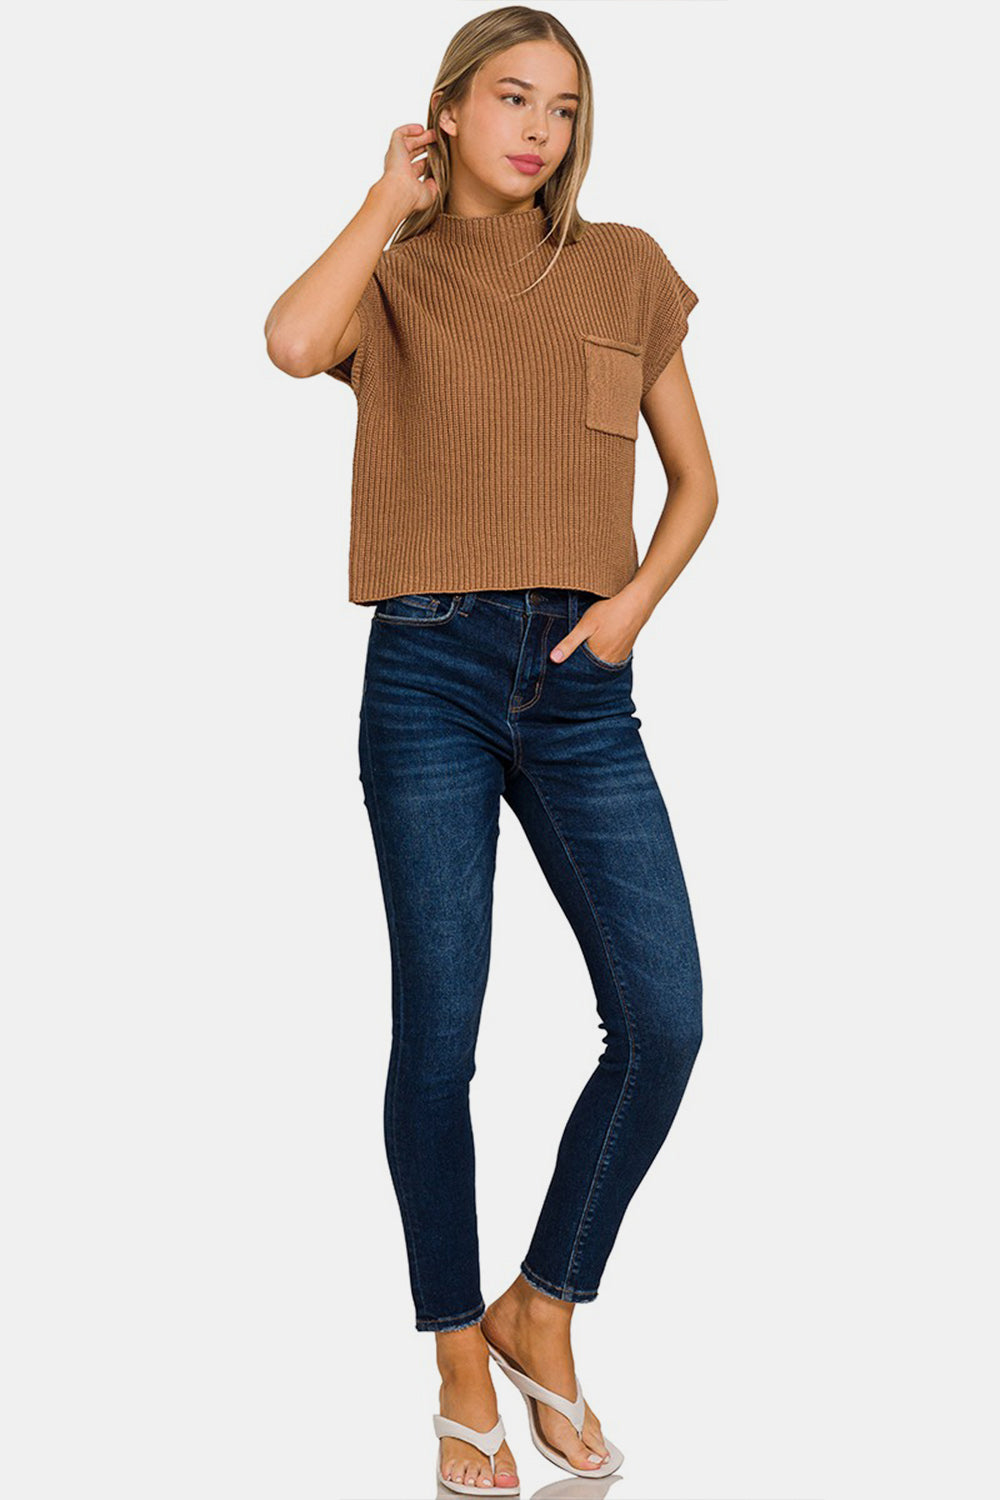 Zenana – Kurzer Pullover mit Stehkragen und kurzen Ärmeln